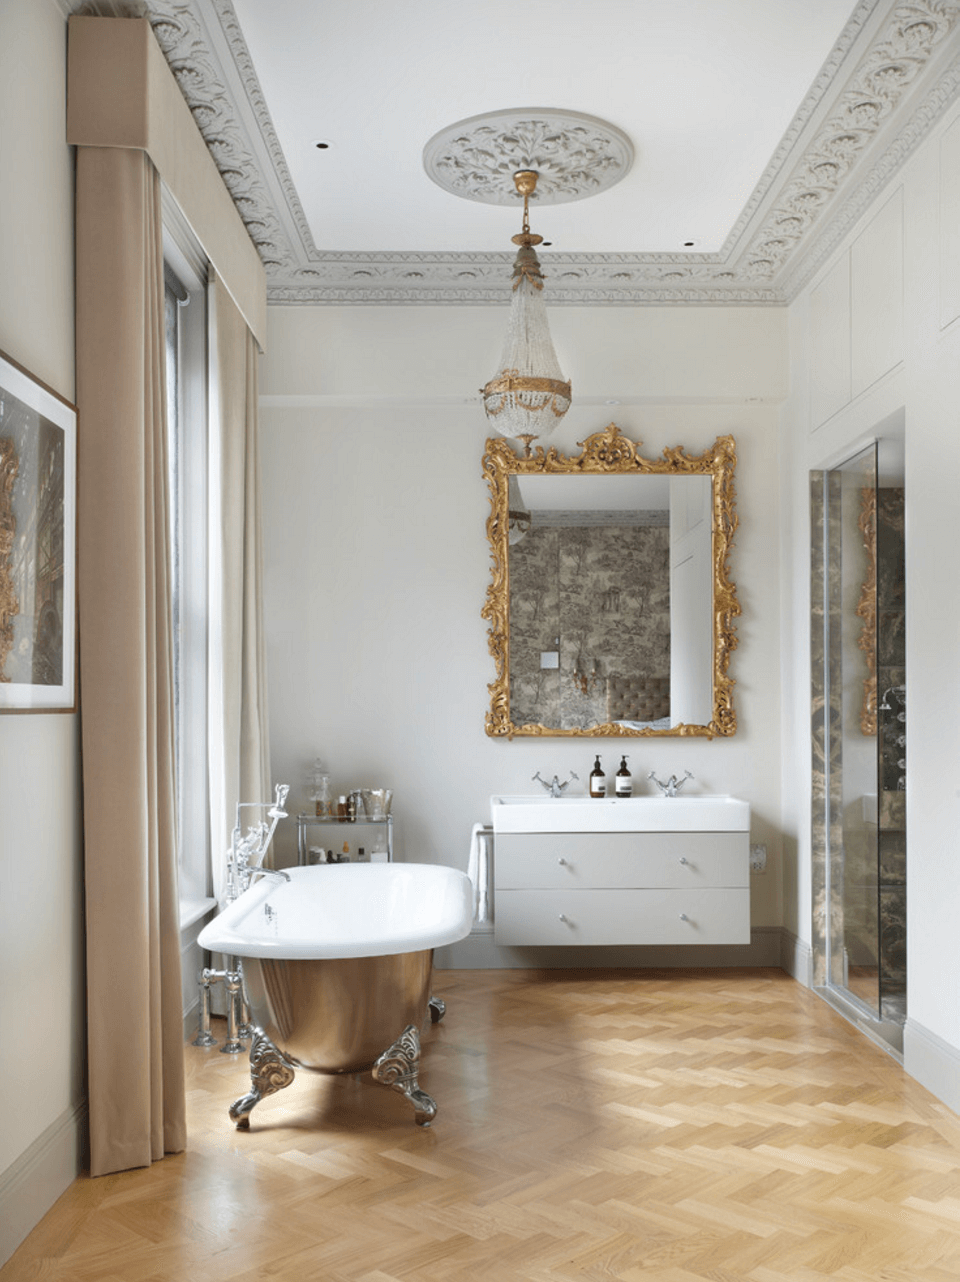 Оригинальный дизайн зеркала в интерьере ванной комнаты - Фото 1